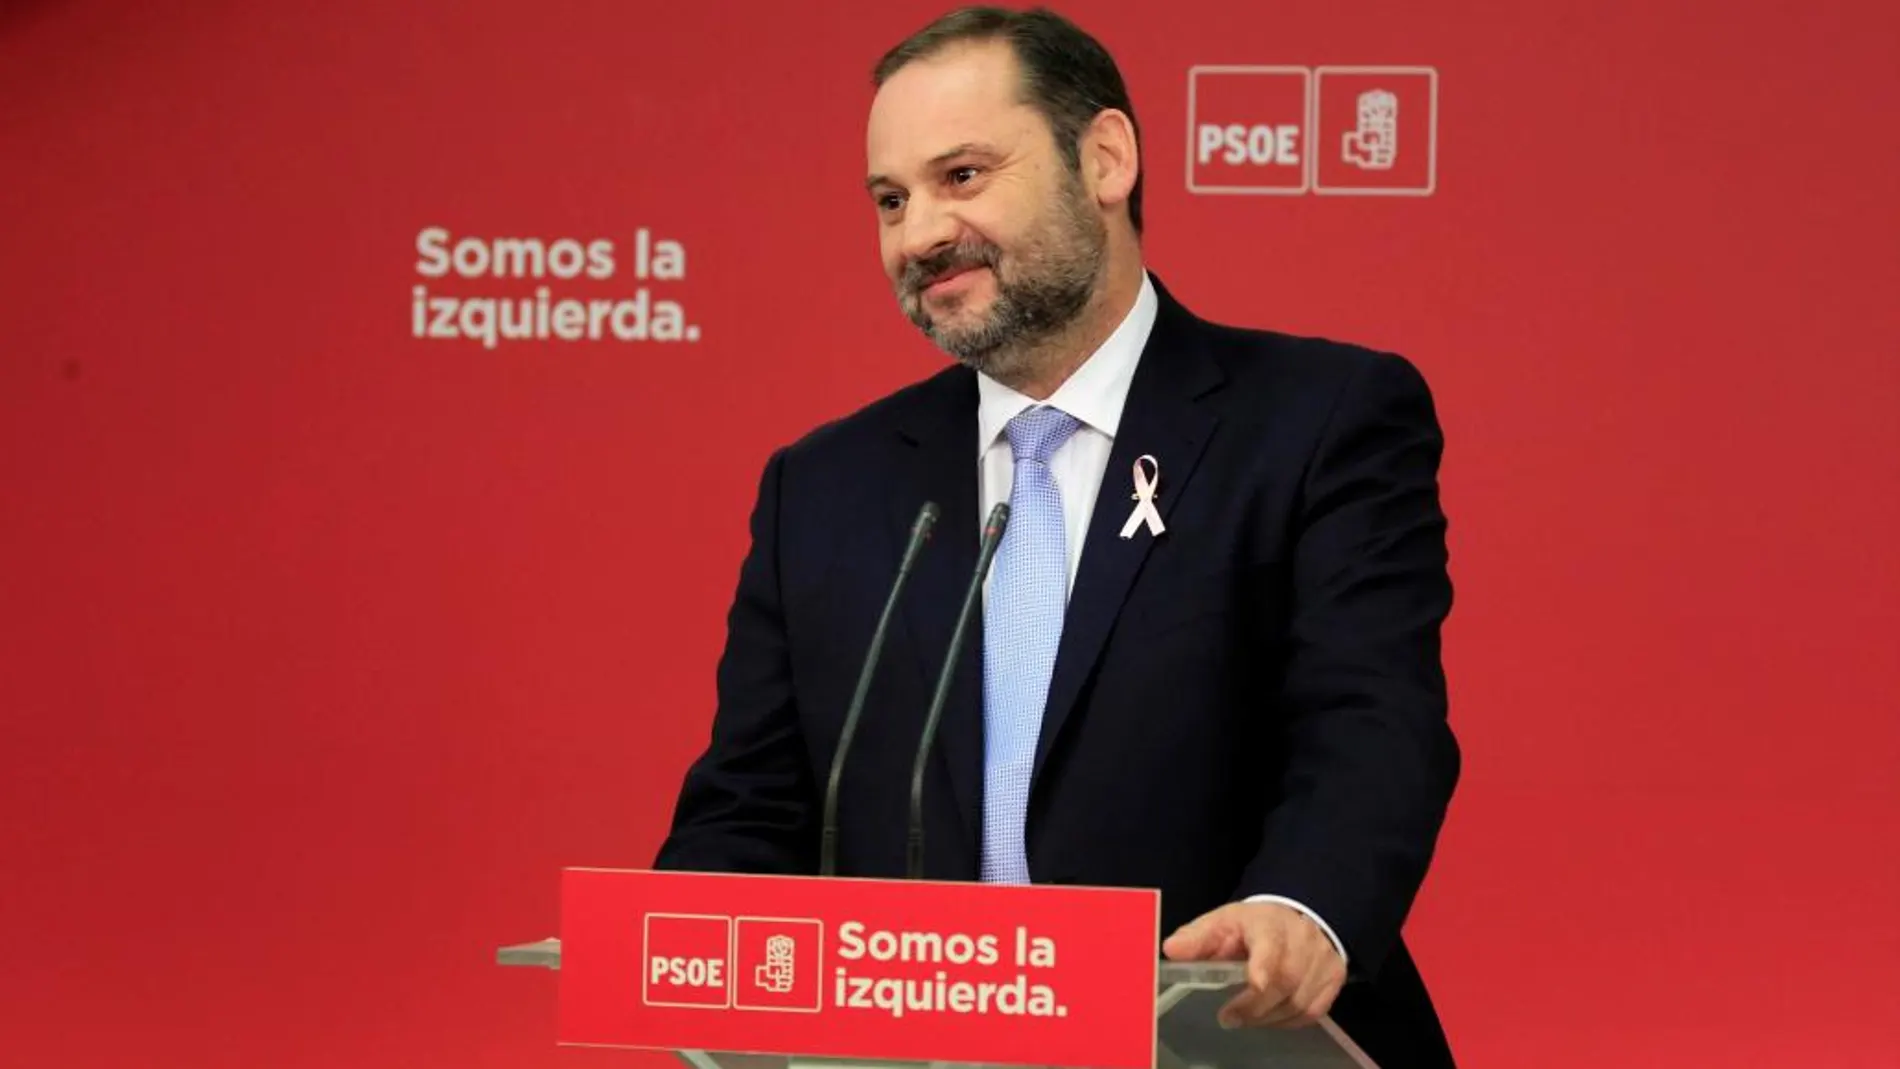 El secretario de Organización del PSOE, José Luis Ábalos, durante la rueda de prensa que ha ofrecido hoy en la sede de Ferraz, en la que ha dicho que su partido apoya al Gobierno en la aplicación del artículo 155